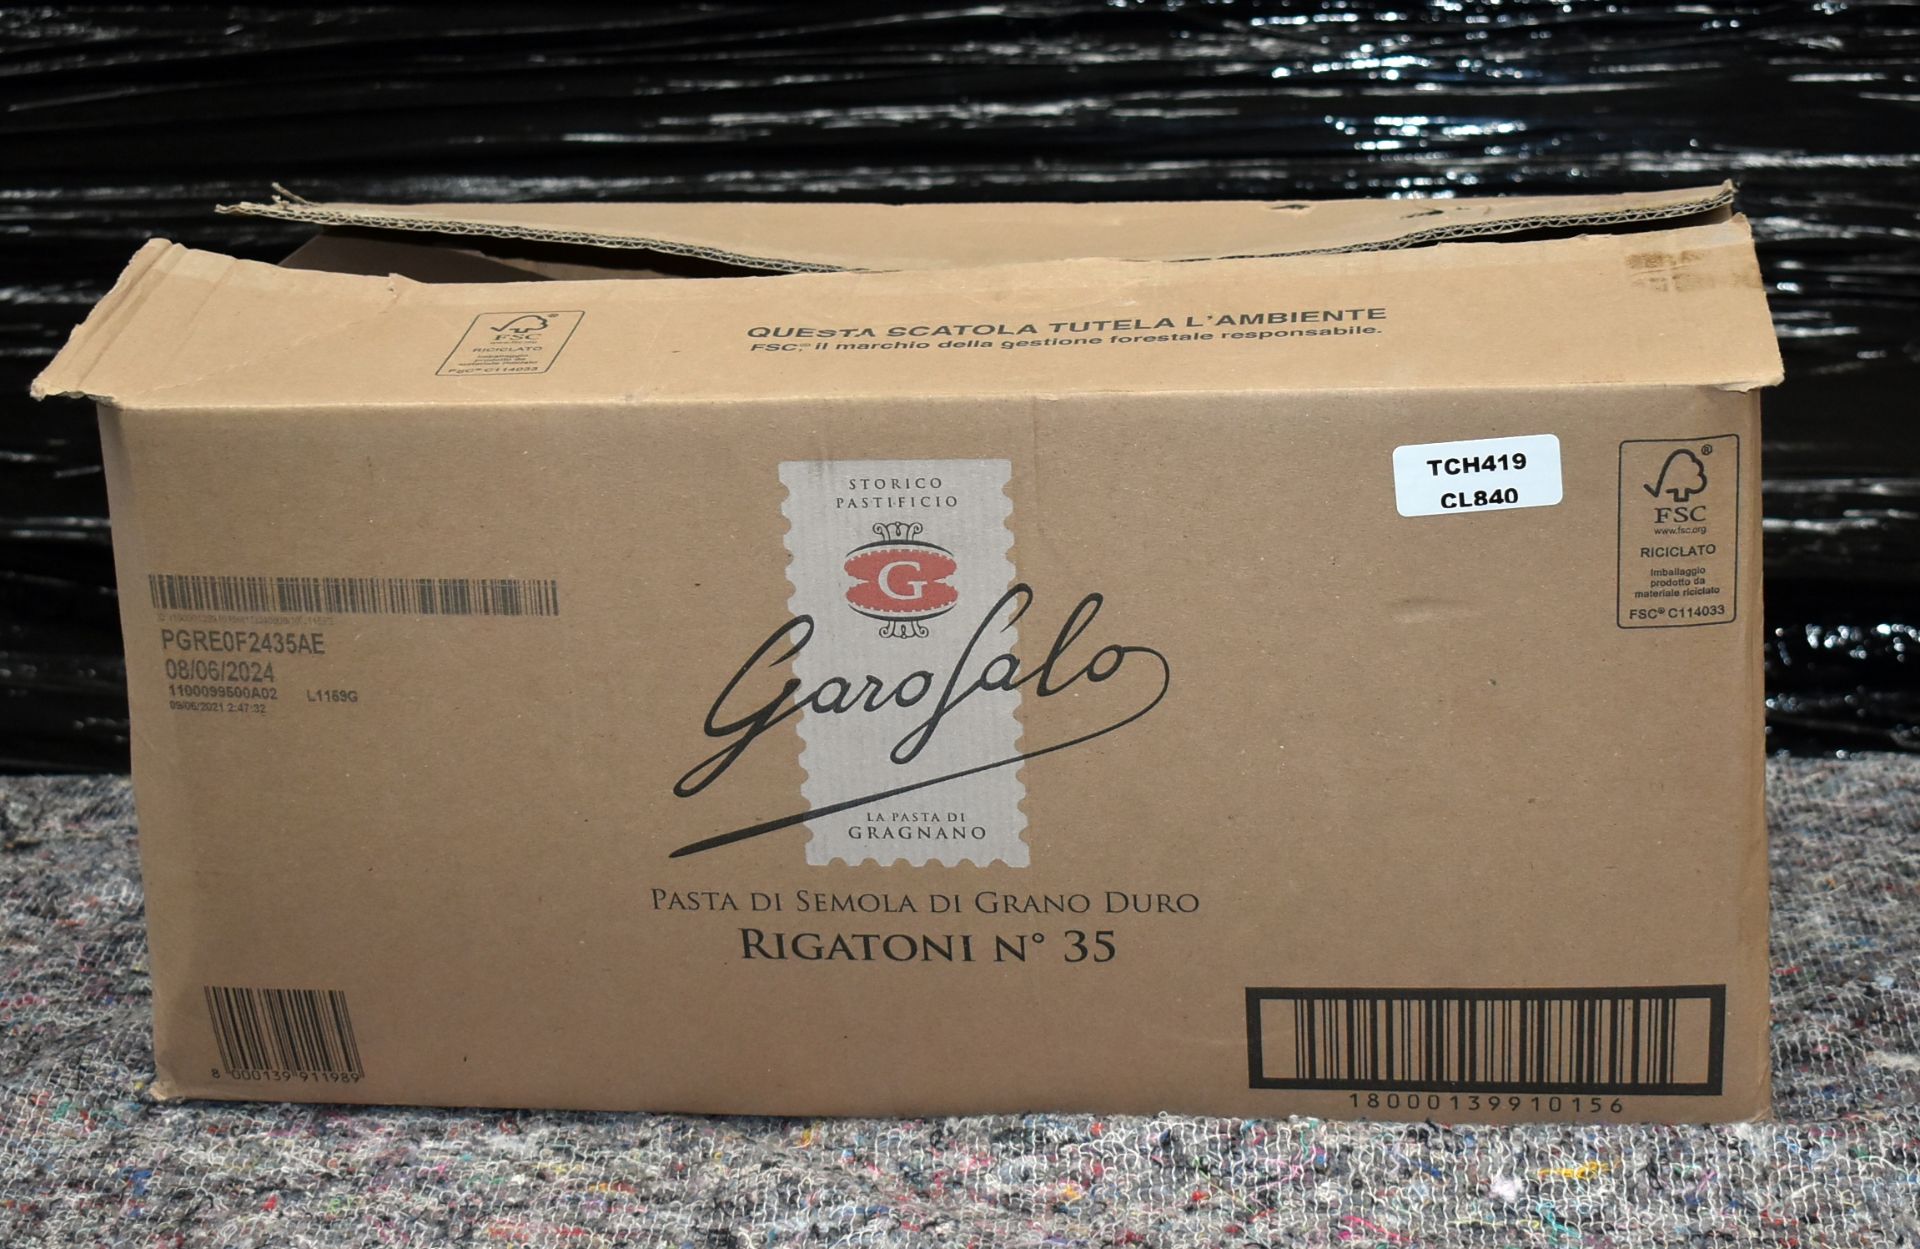 1 x GAROFALO box Containing Various Pastas - Image 4 of 7